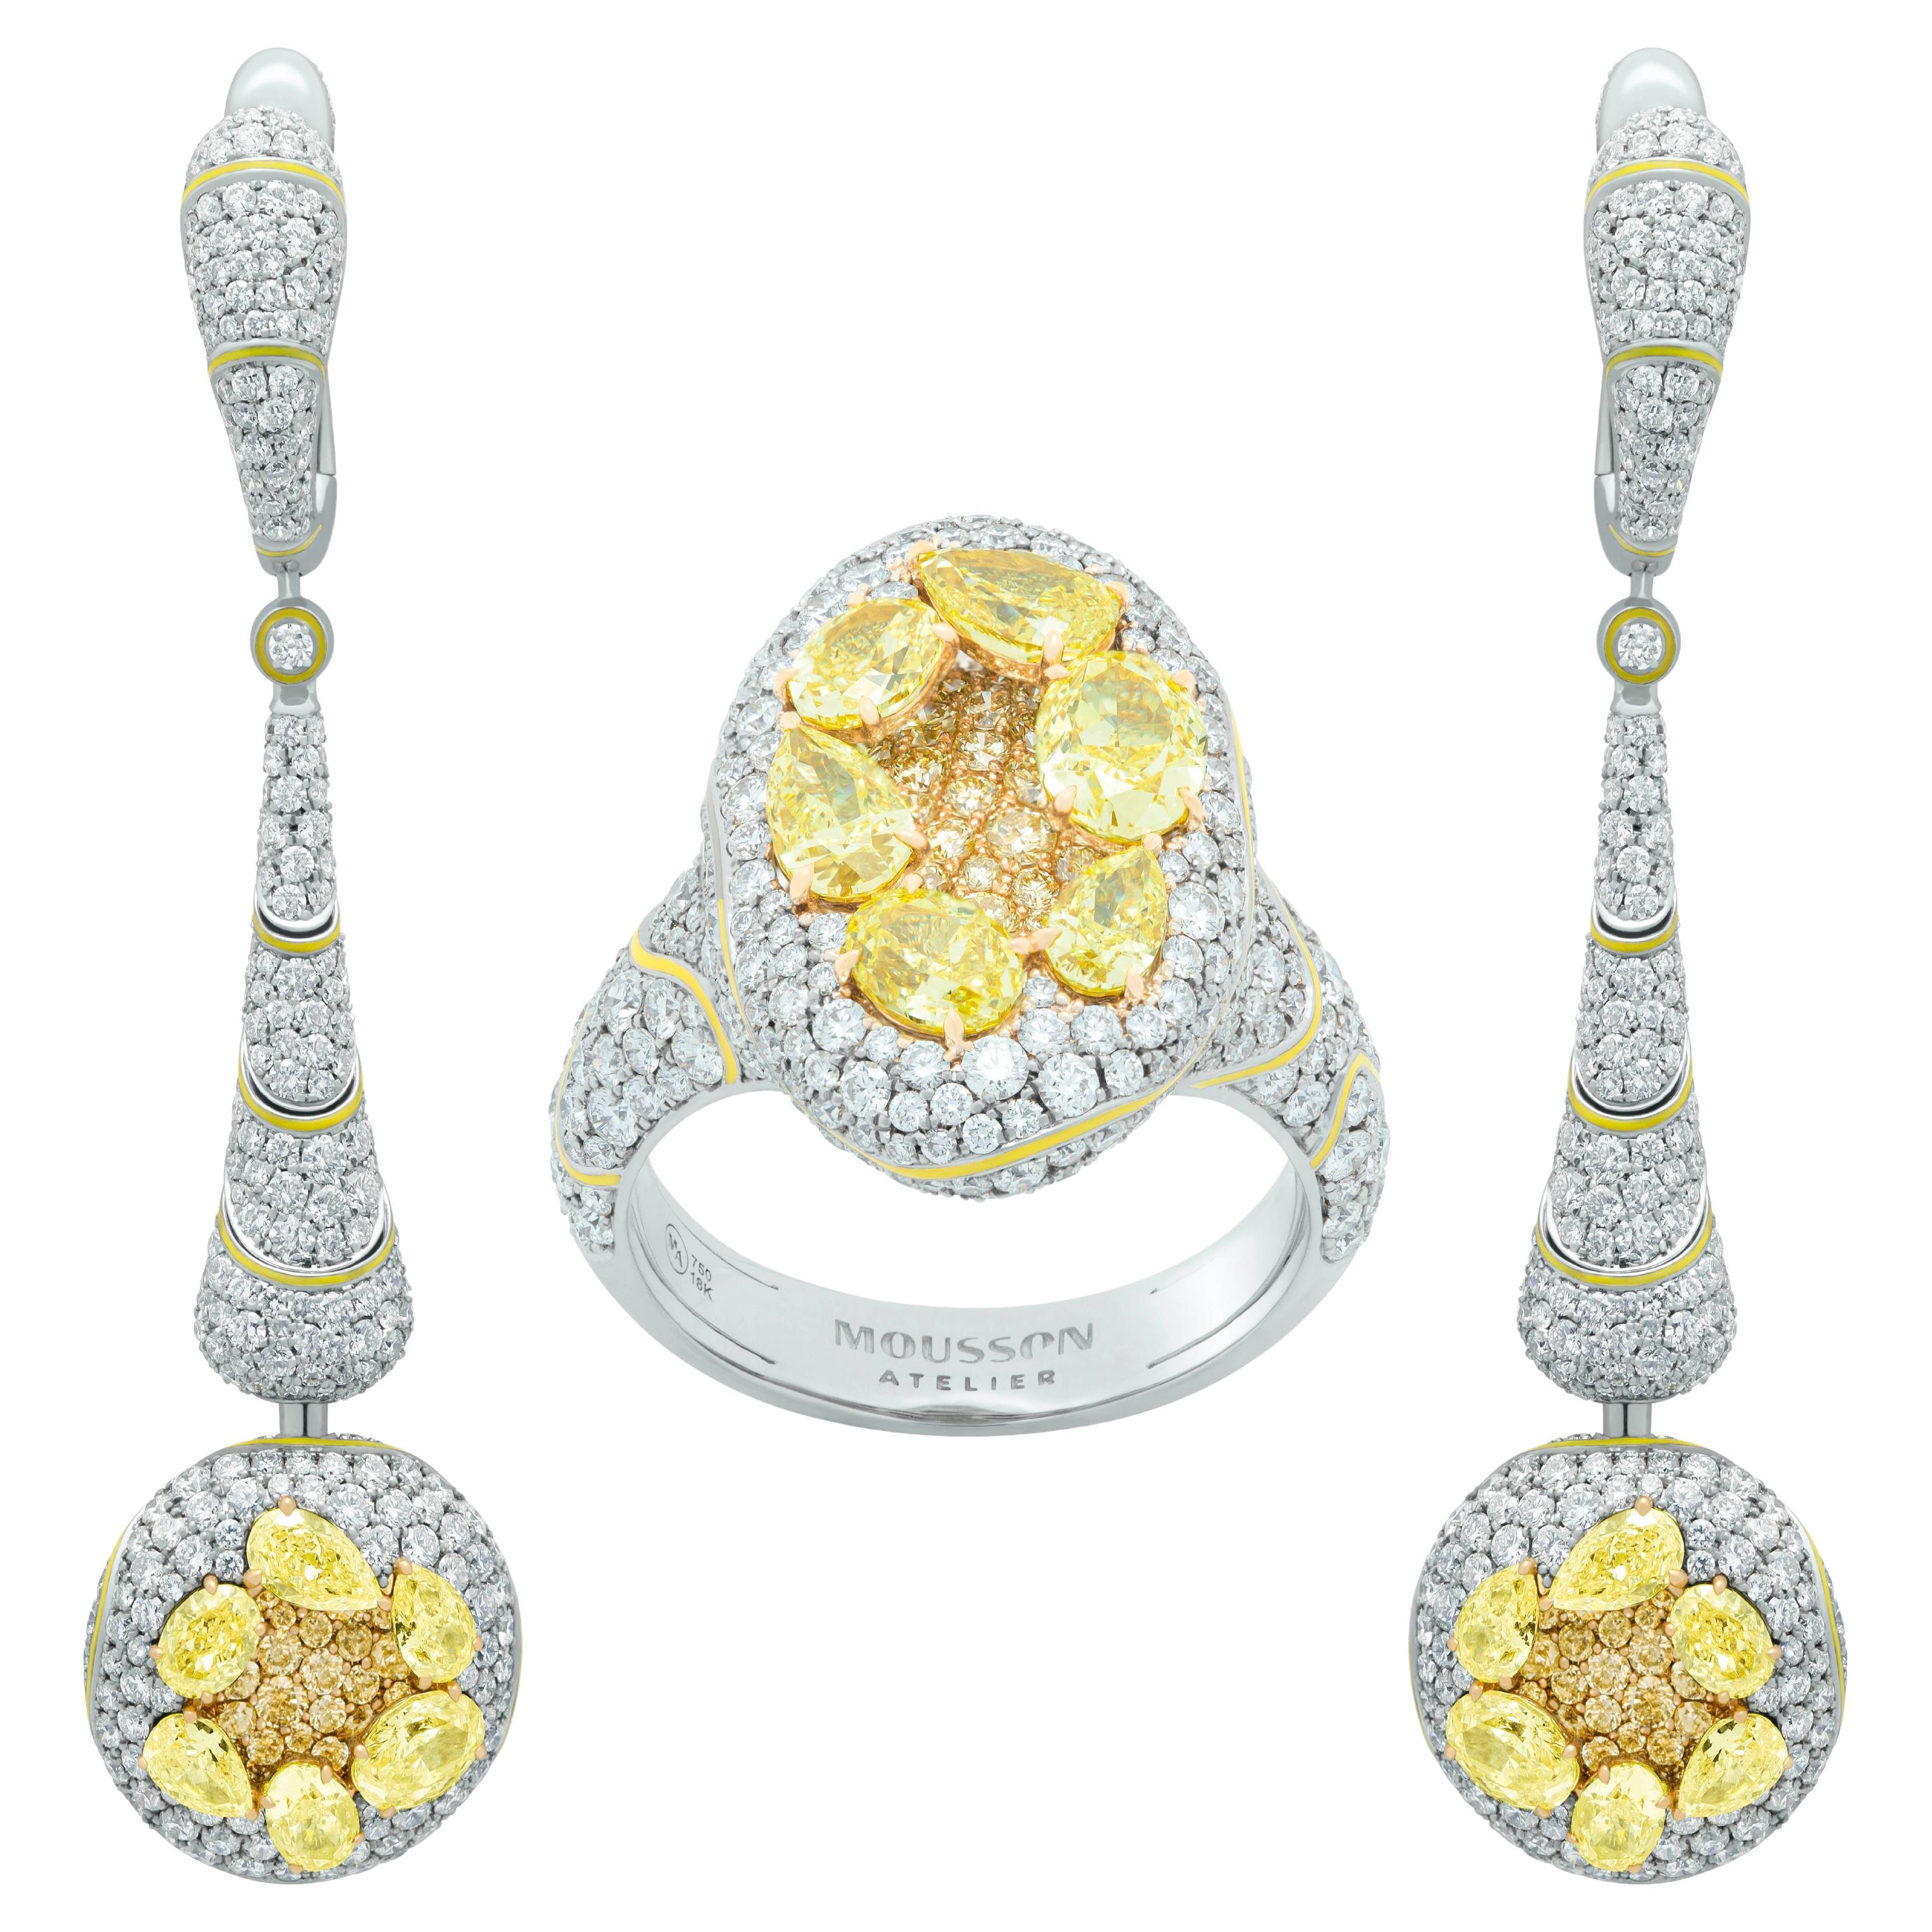 Gelbe Diamanten Weiße Diamanten und weiße Diamanten Emaille 18 Karat Weißgold High Jewellry Suite